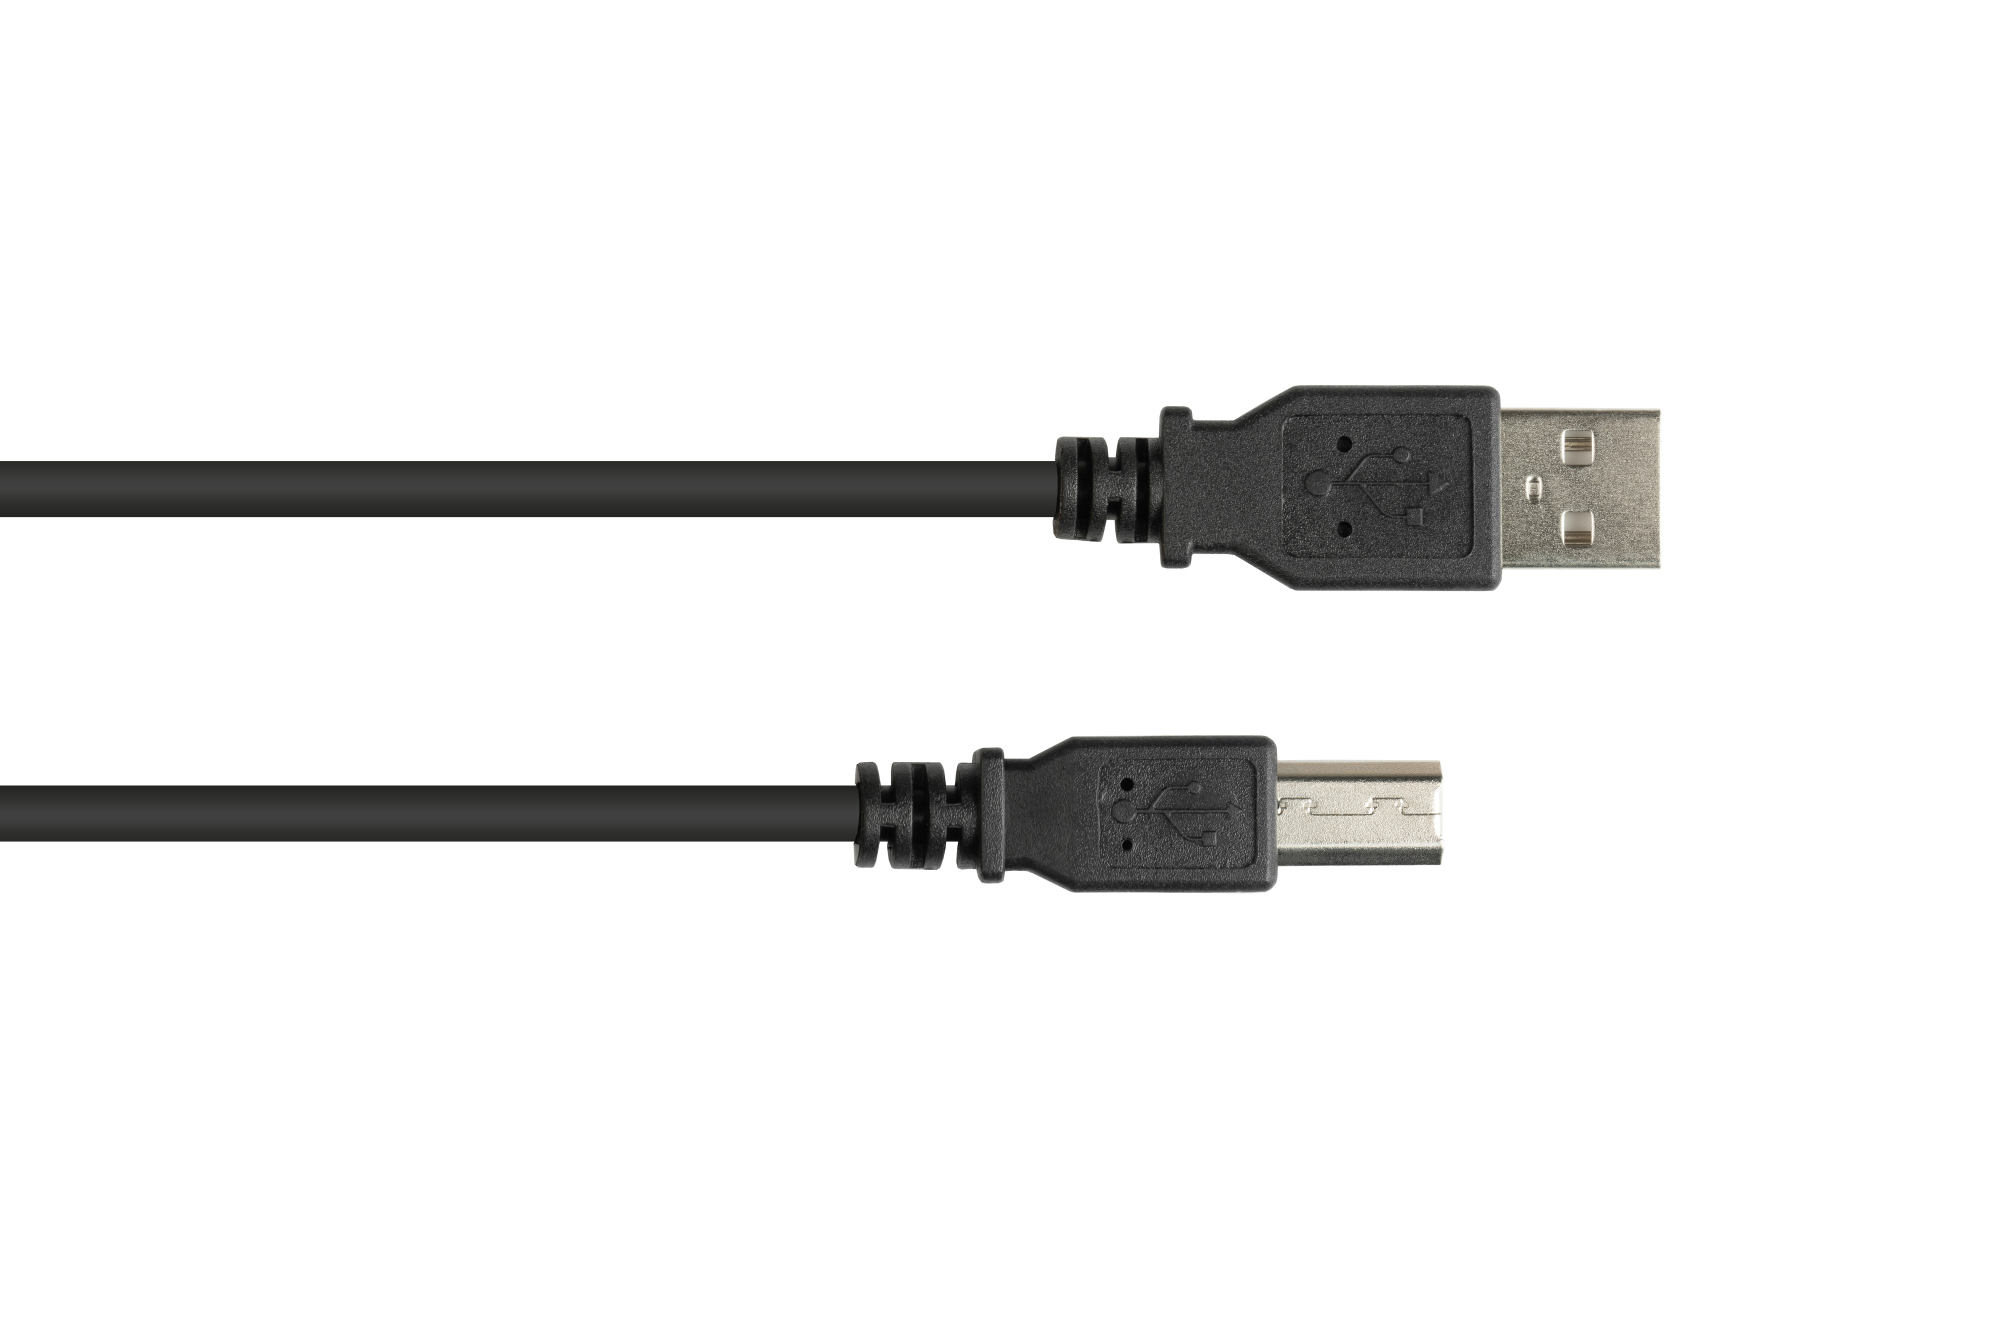 Anschlusskabel USB 2.0 Stecker A an Stecker B, schwarz, 0,5m, Good Connections®